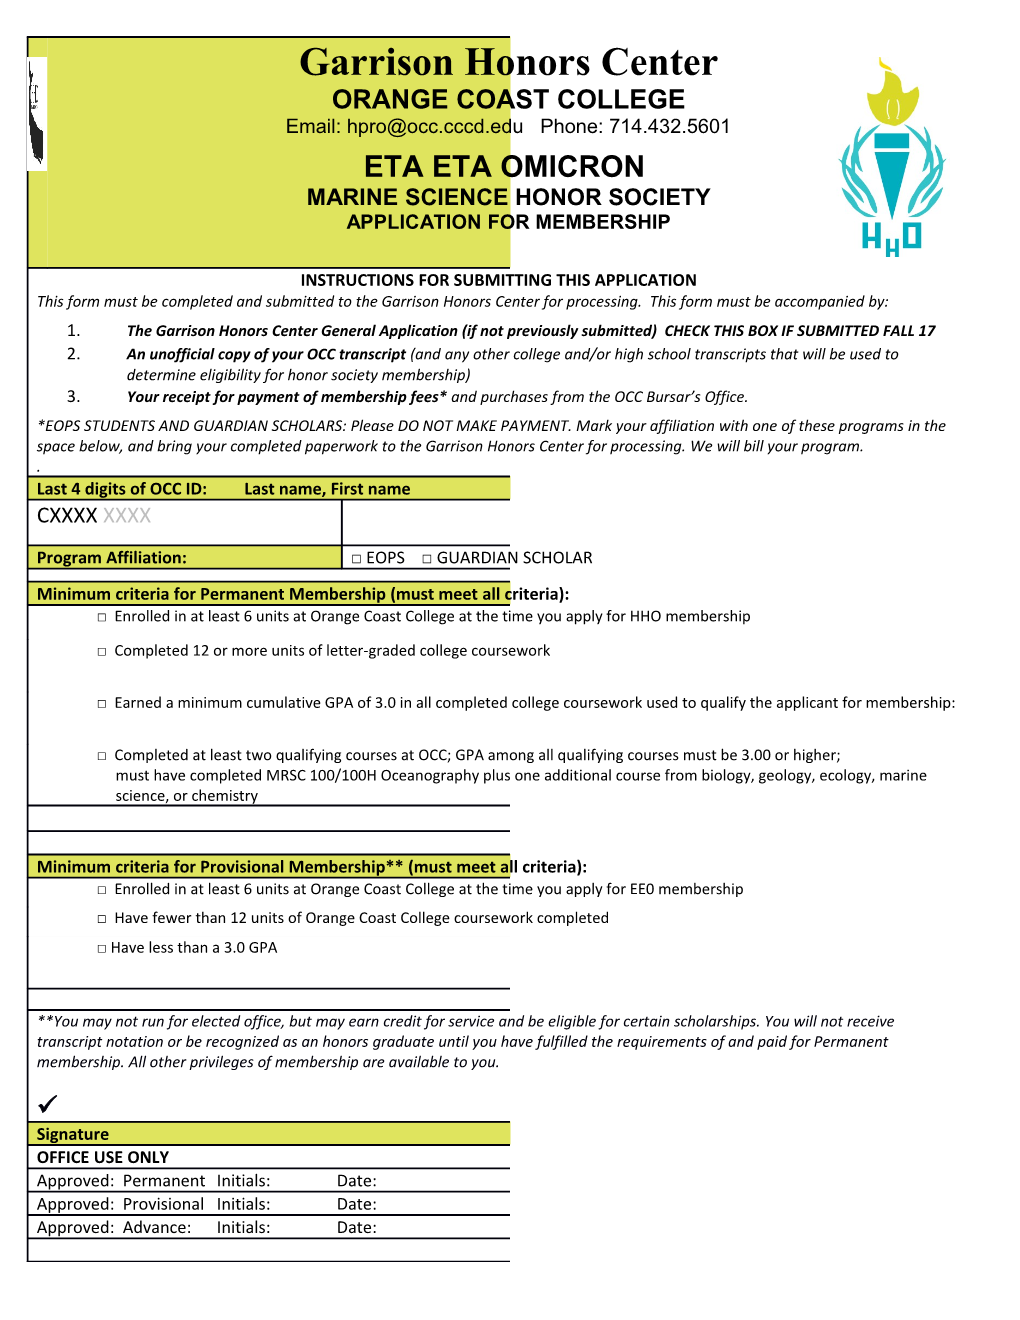 Eta Eta Omicron Application 2017-18